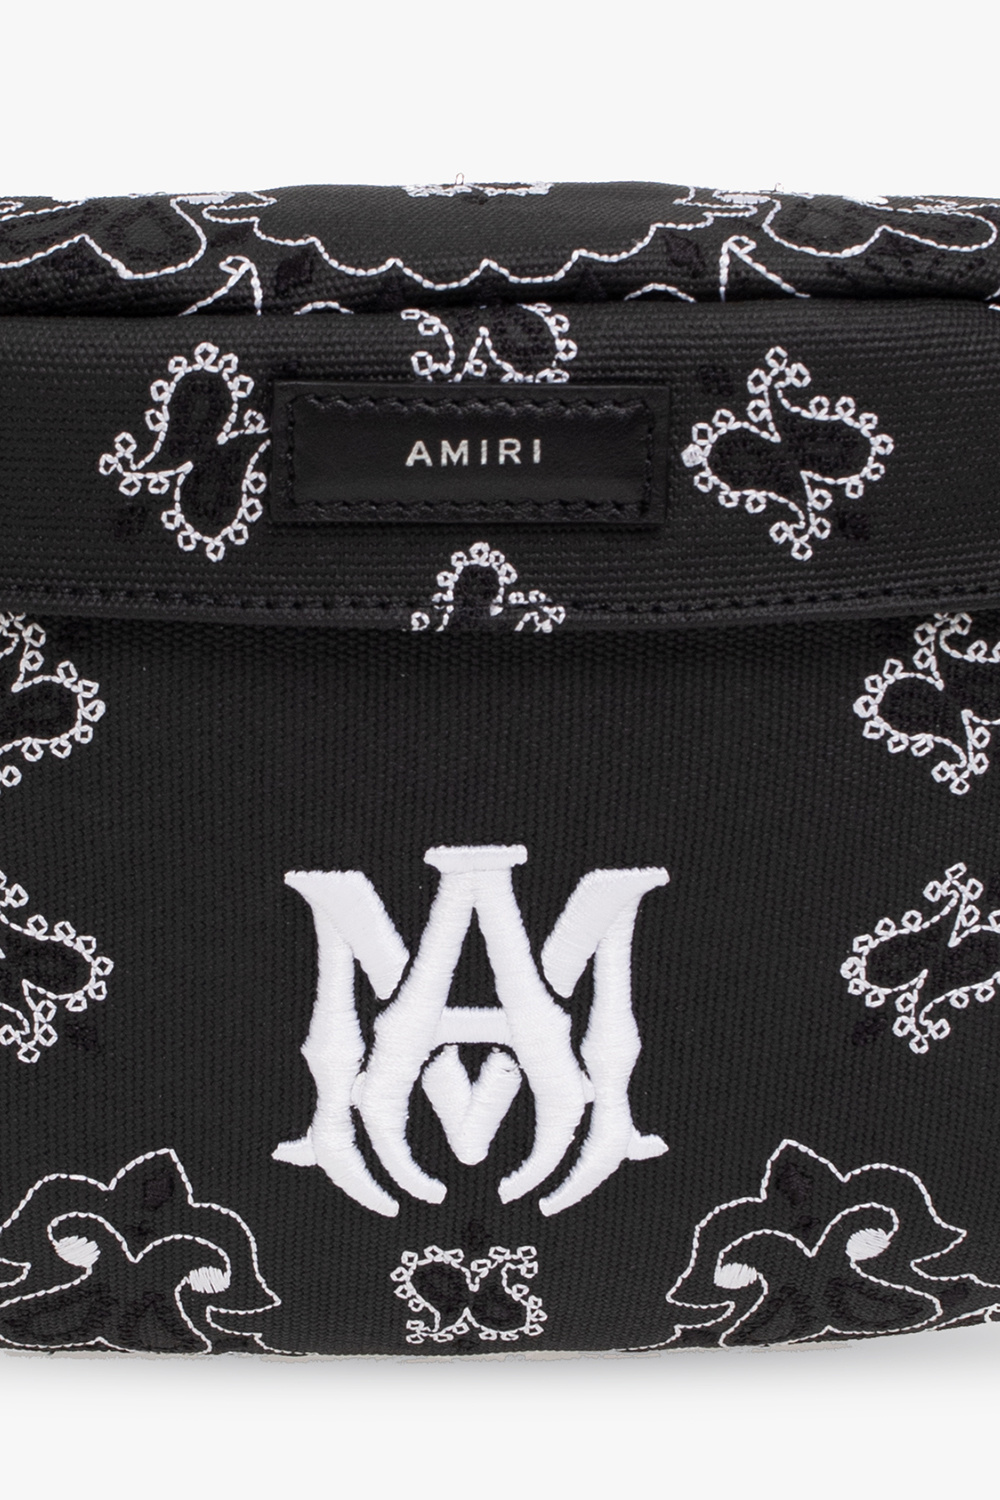 Amiri alyx 9sm logo plaque crossbody bag item